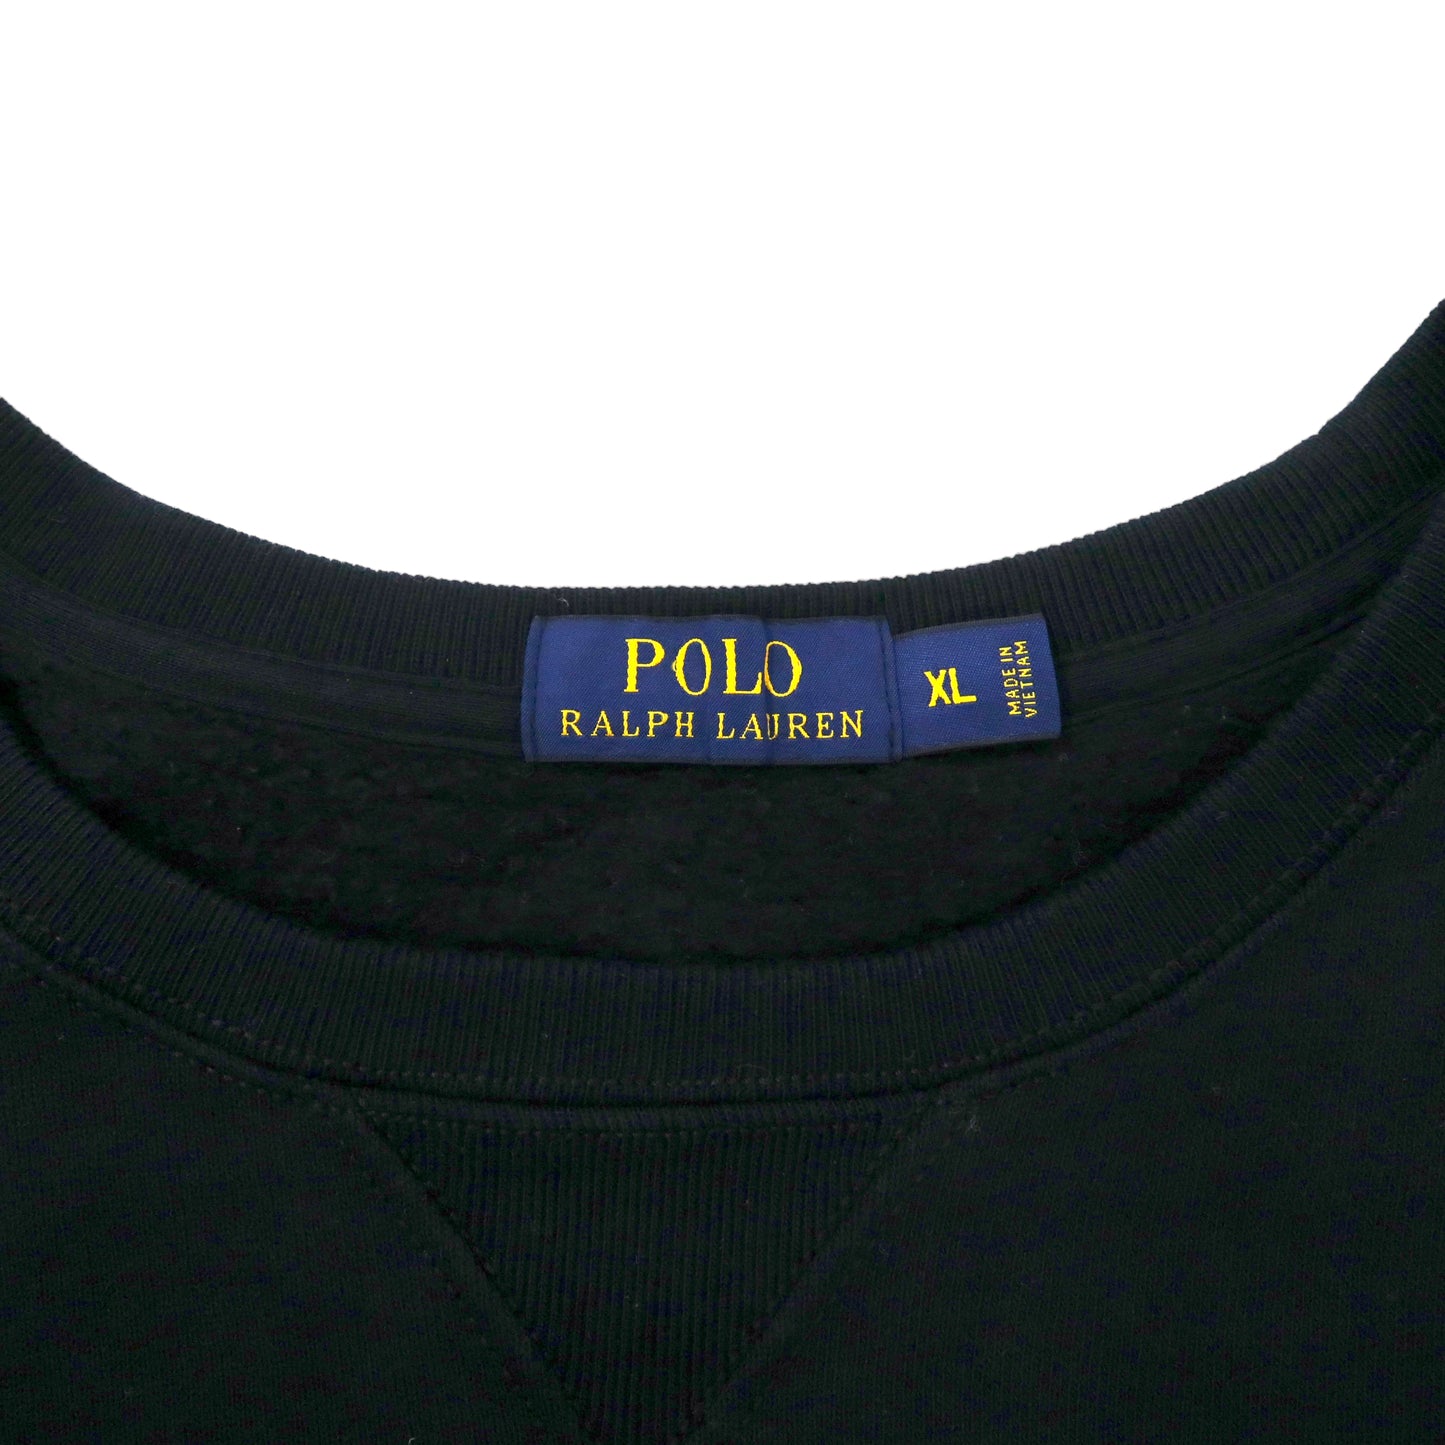 POLO RALPH LAUREN ビッグサイズ クルーネックスウェット XL ブラック コットン 裏起毛 スモールポニー刺繍